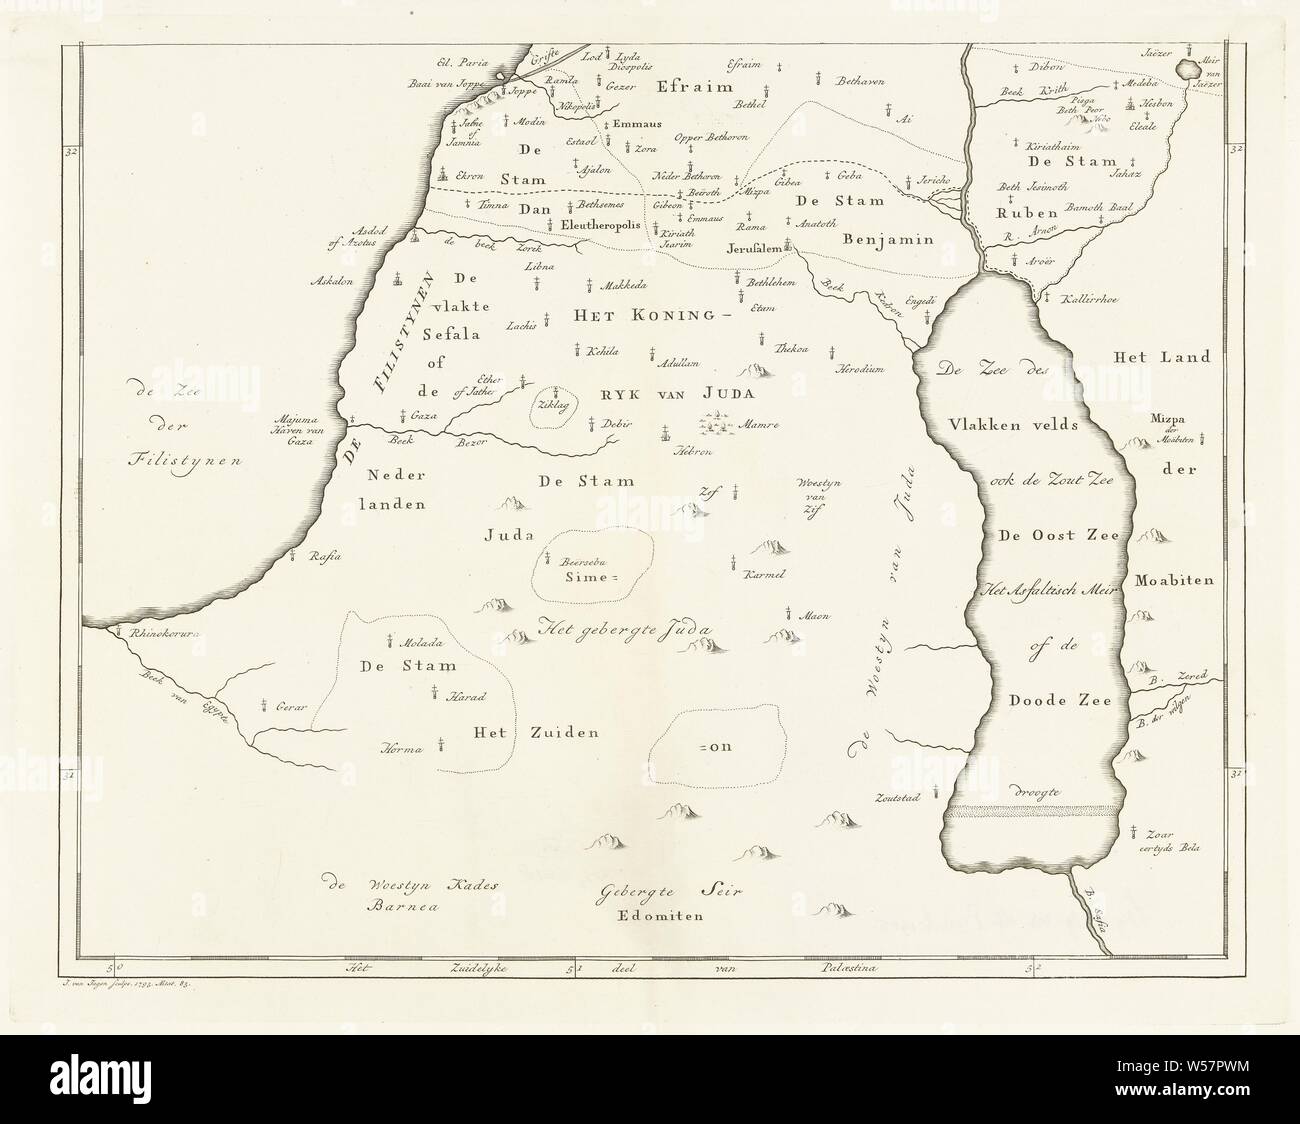 Carte de la partie sud de la Palestine, des cartes de pays ou de régions distinctes, Jan van Jagen (mentionné sur l'objet), Amsterdam, 1793, papier, gravure, h 354 mm × W 449 mm Banque D'Images